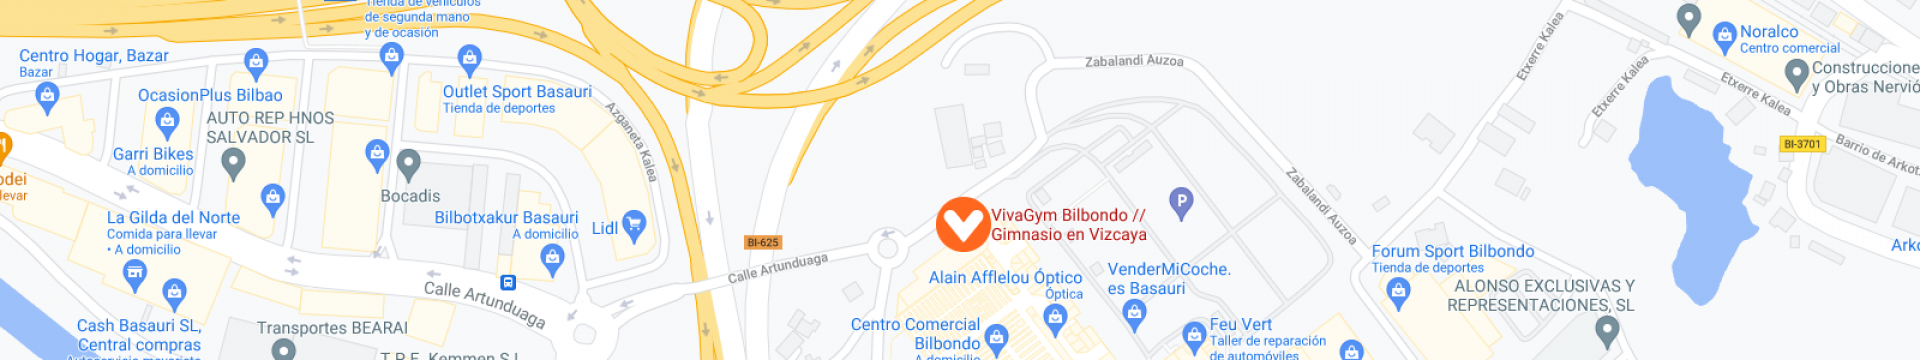 mapa vivagym bilbondo